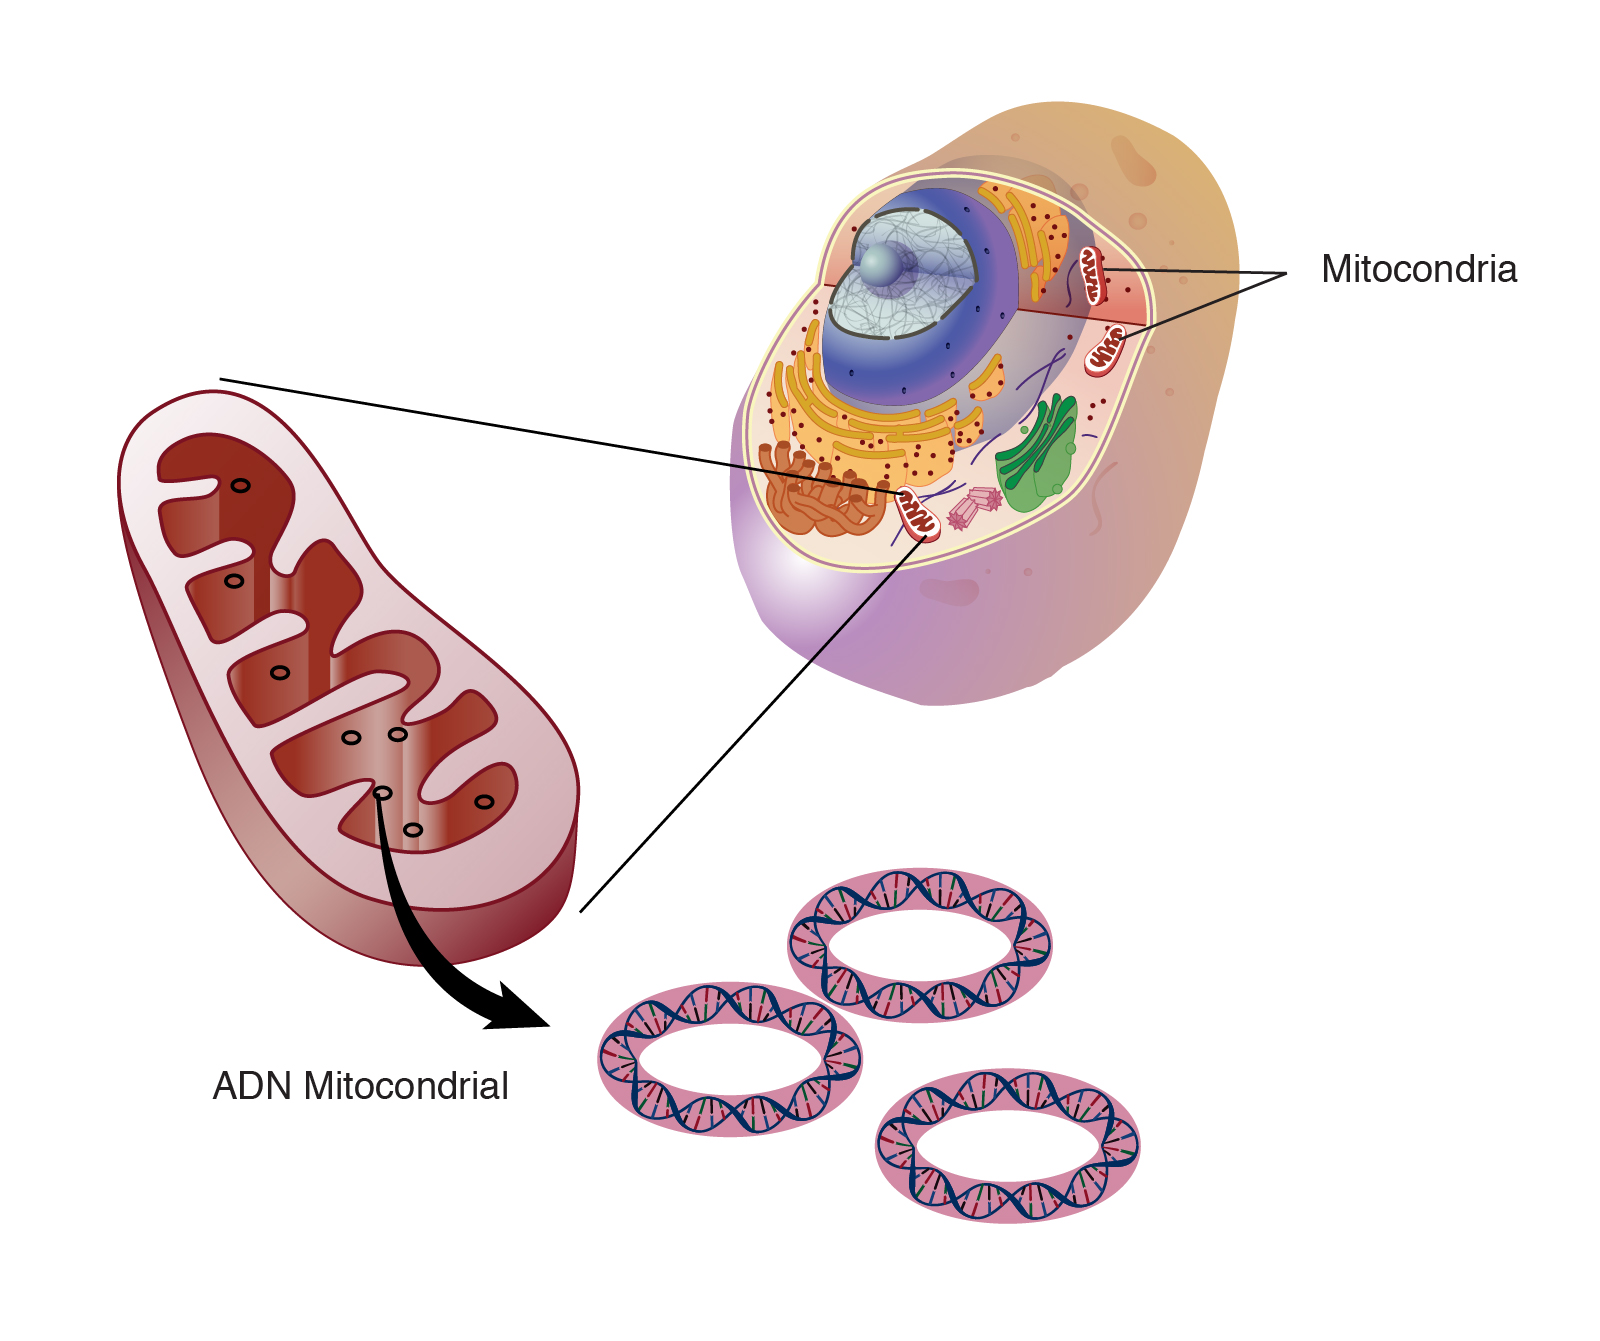  ADN_mitocondrial